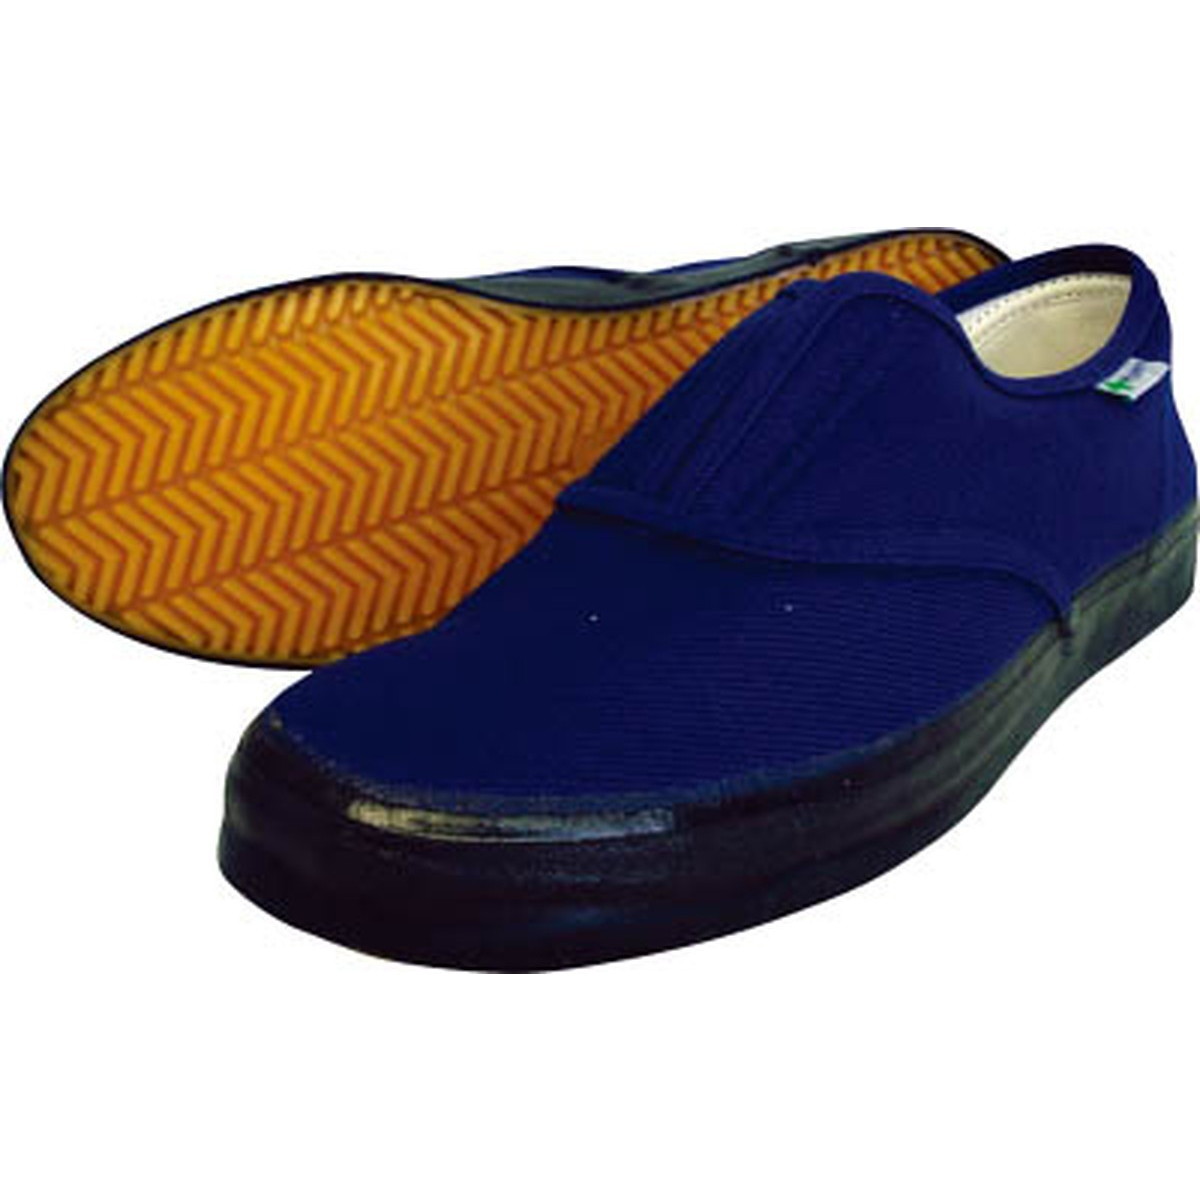 日進ゴム たびぐつ #1000 27.0cm 紺(ネイビー) ハイパーVソール搭載 HyperV 安全靴 作業靴